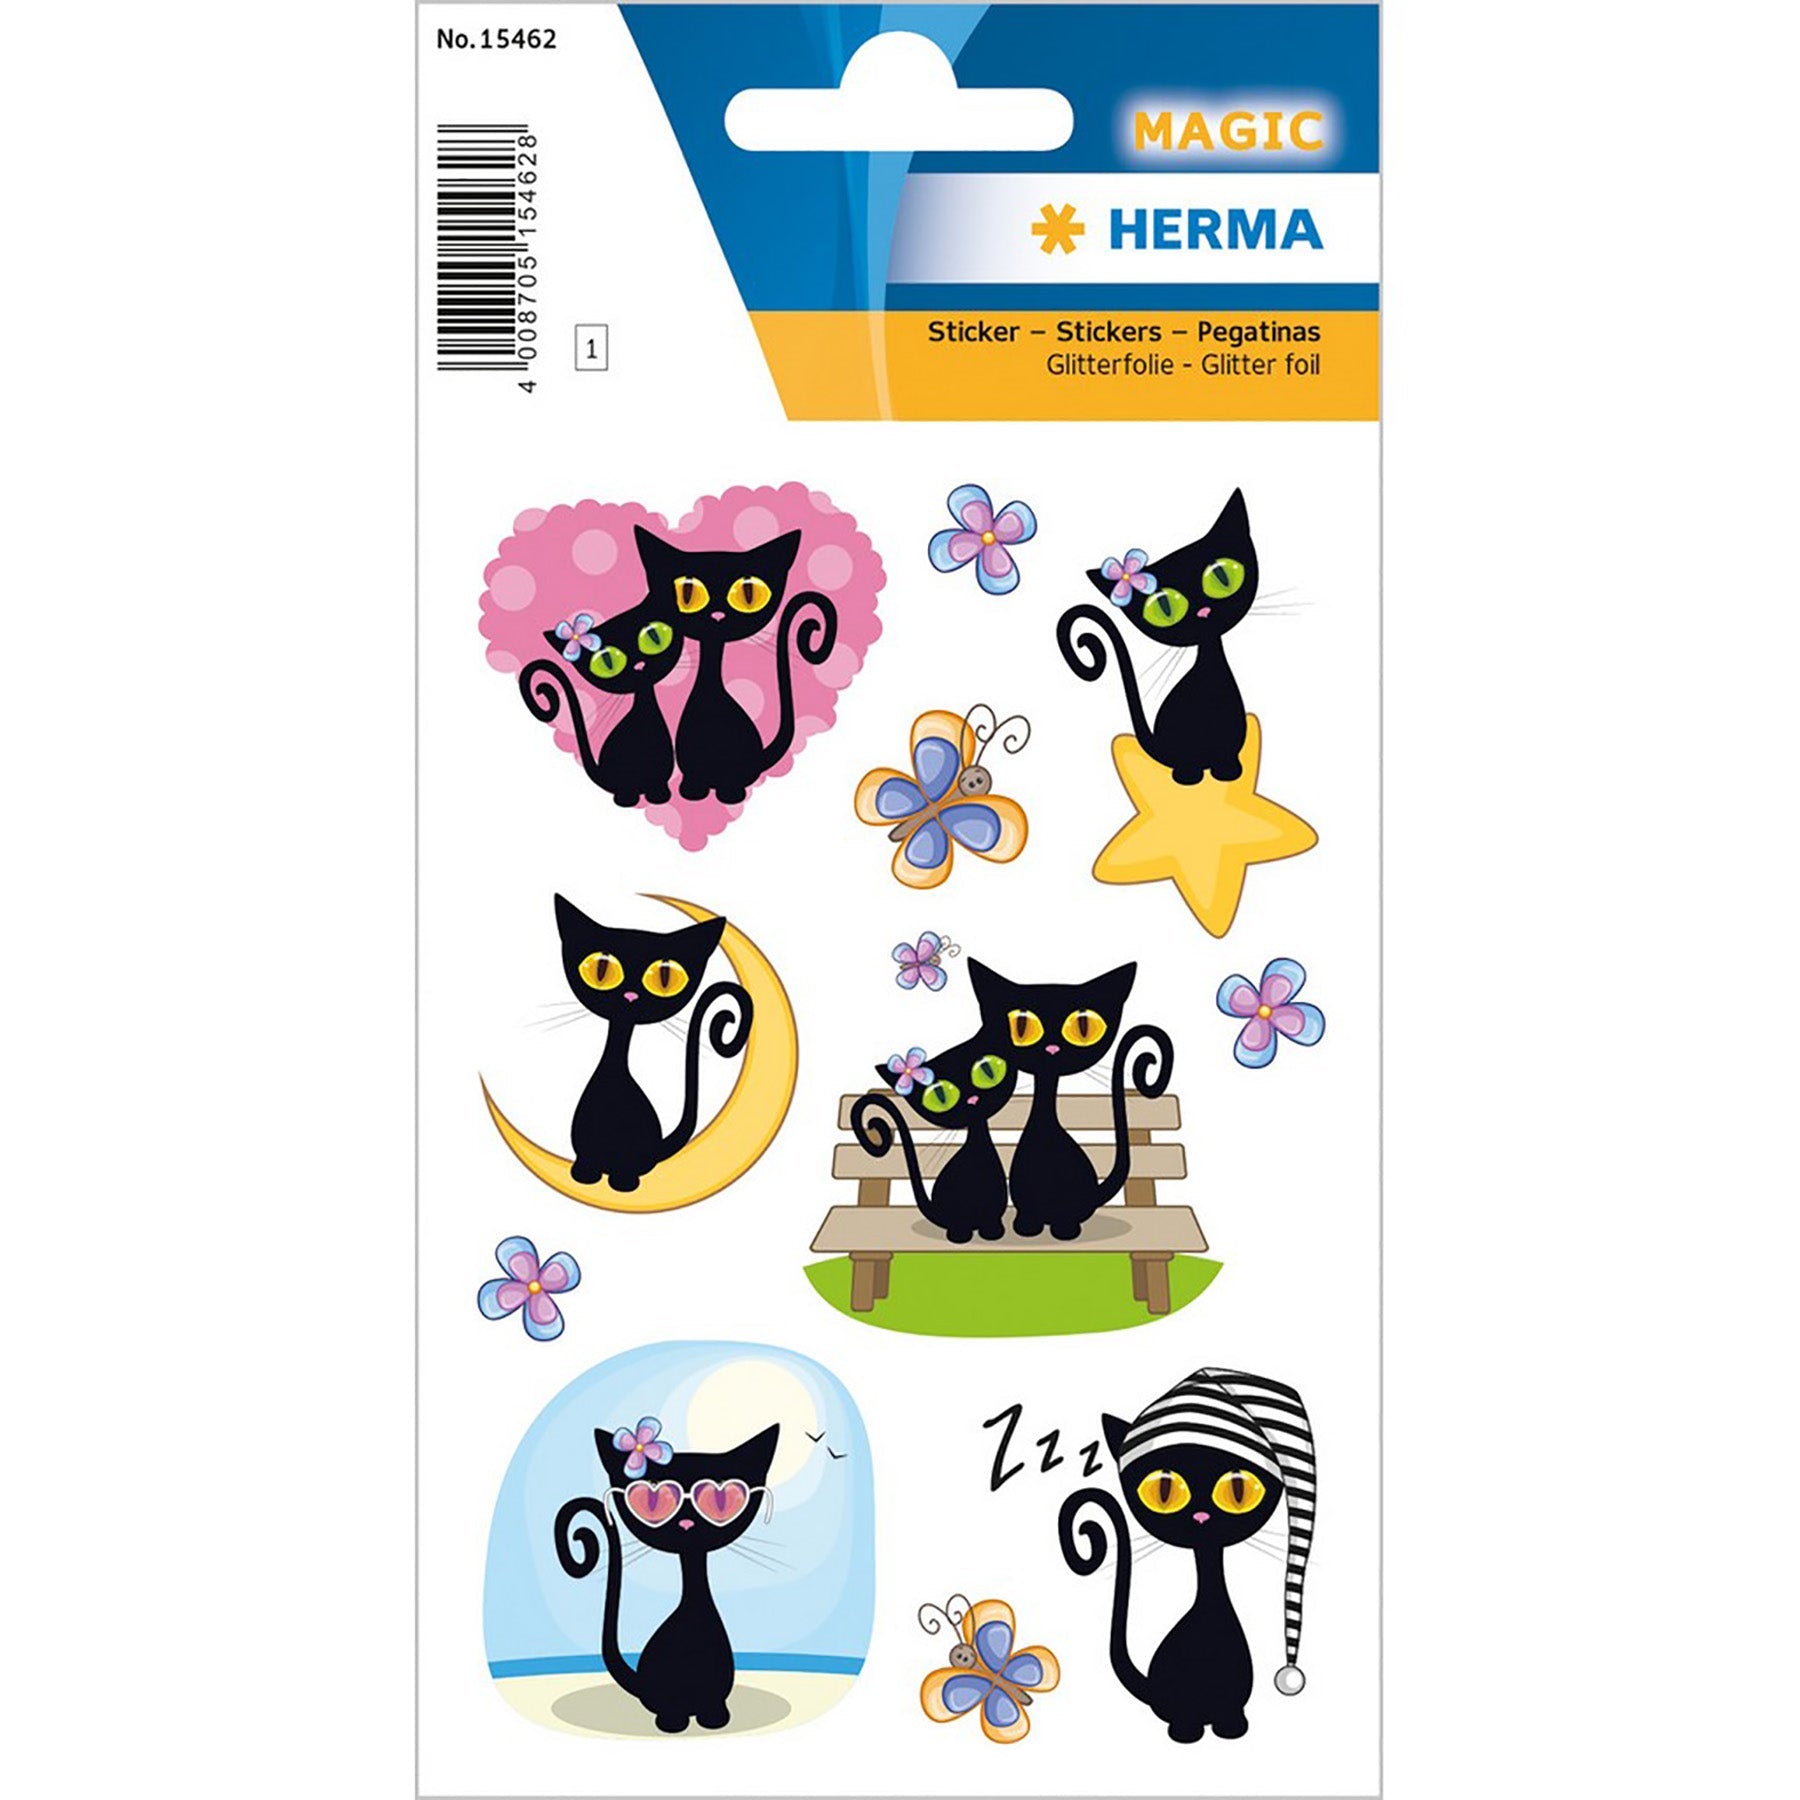 Herma Magic Stickers Cute Cat Glitter 4.75x3.1in Sheet